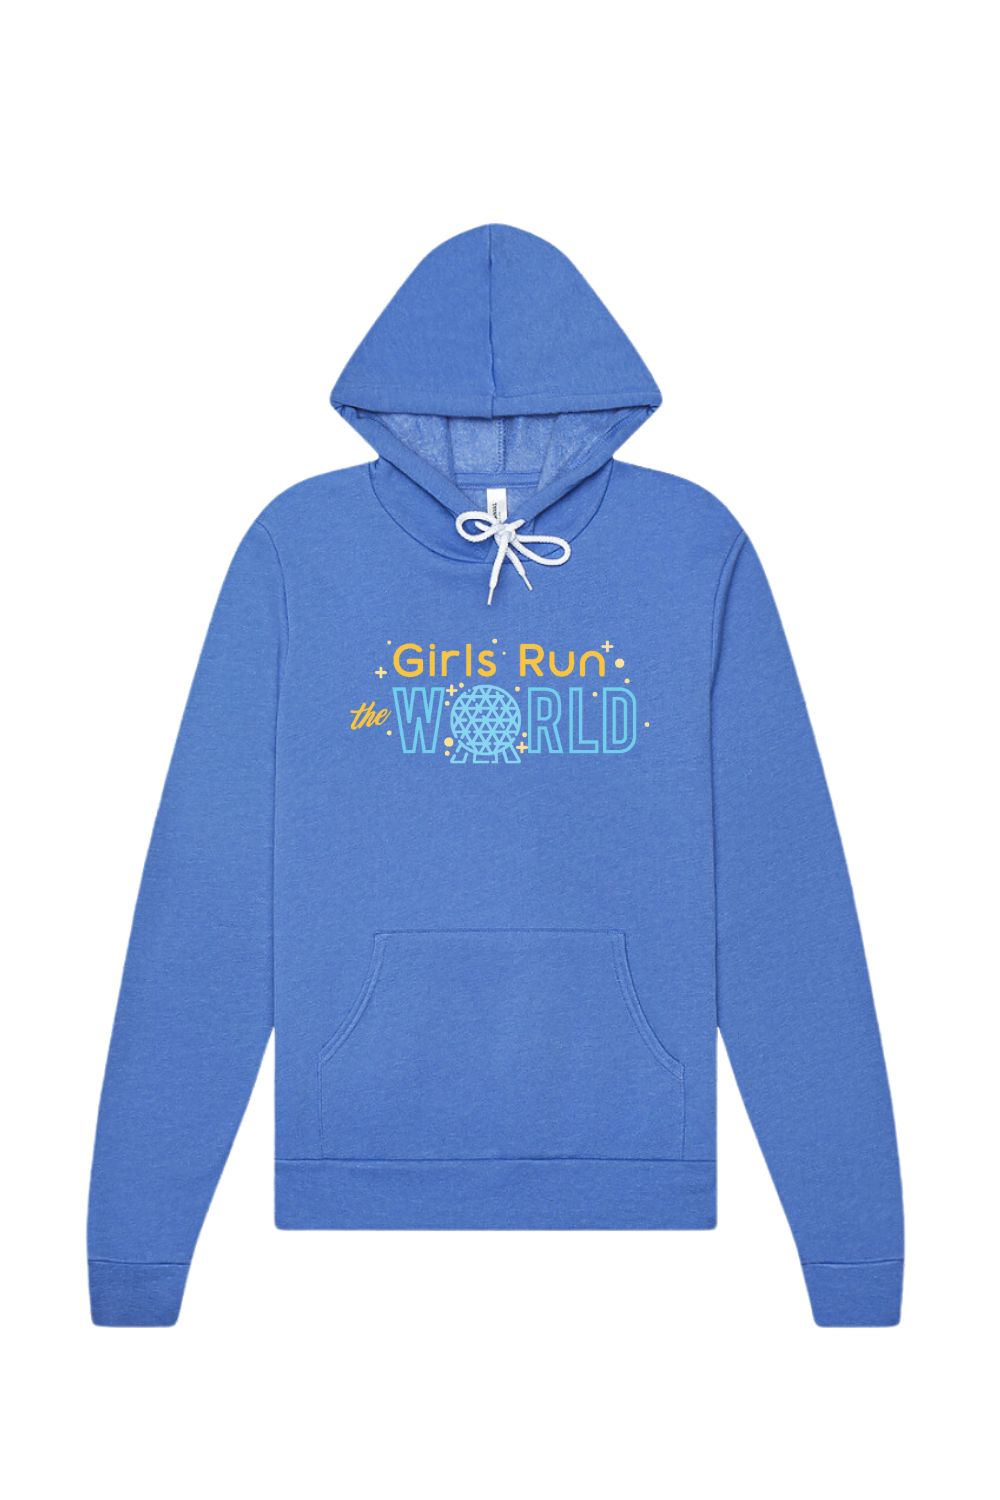 Girls Run The World Hoodie Sweatshirt